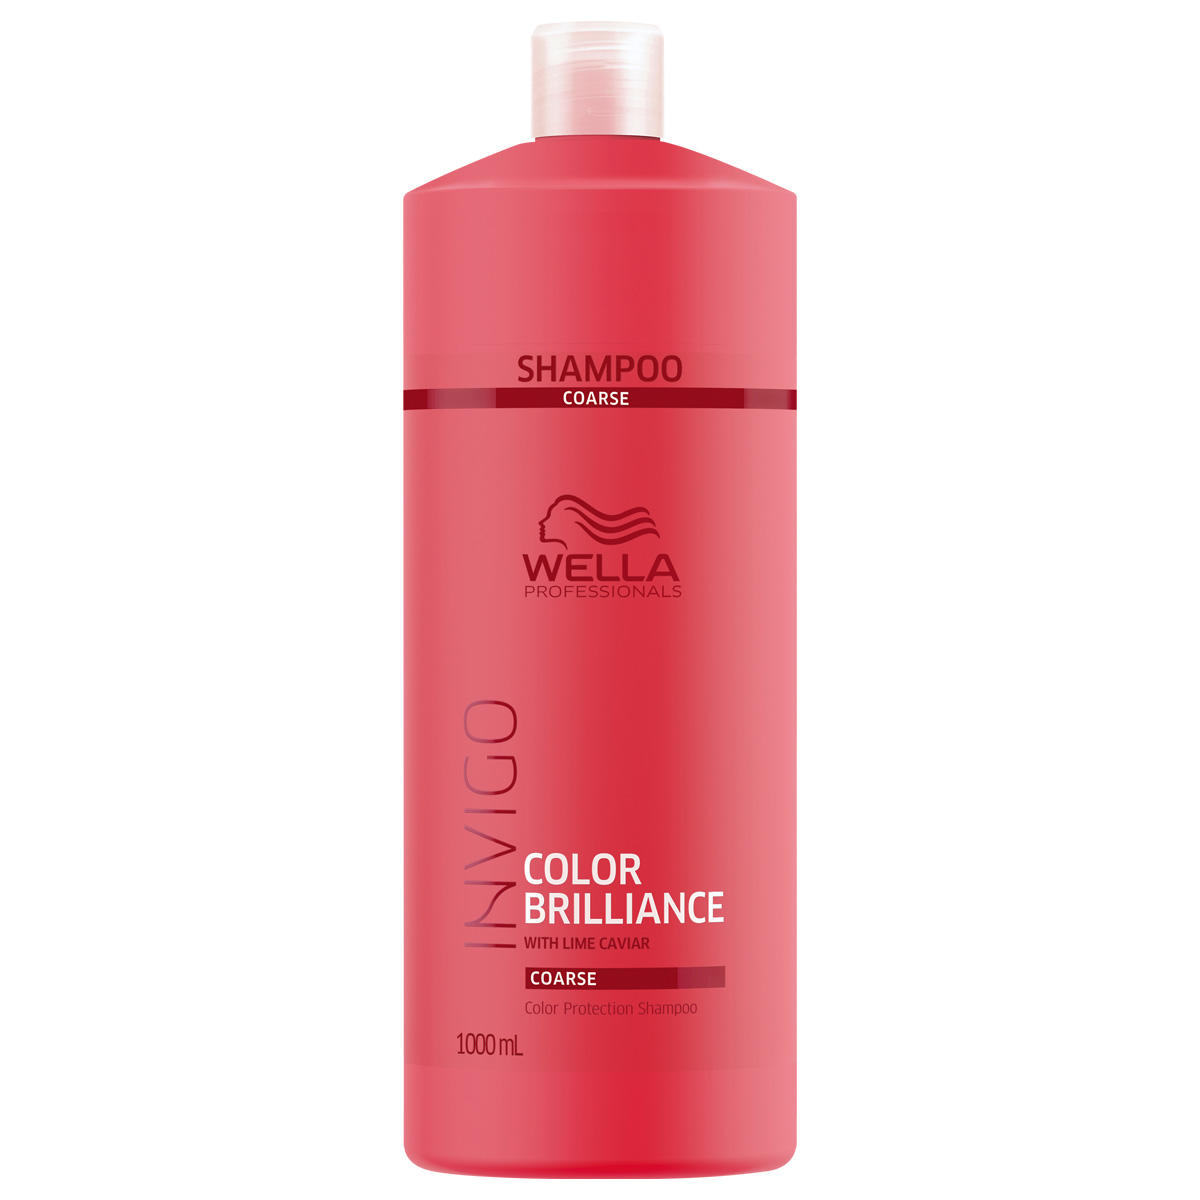 Wella Invigo Color Brilliance Color Protection Shampoo Coarse 1 Liter - 1